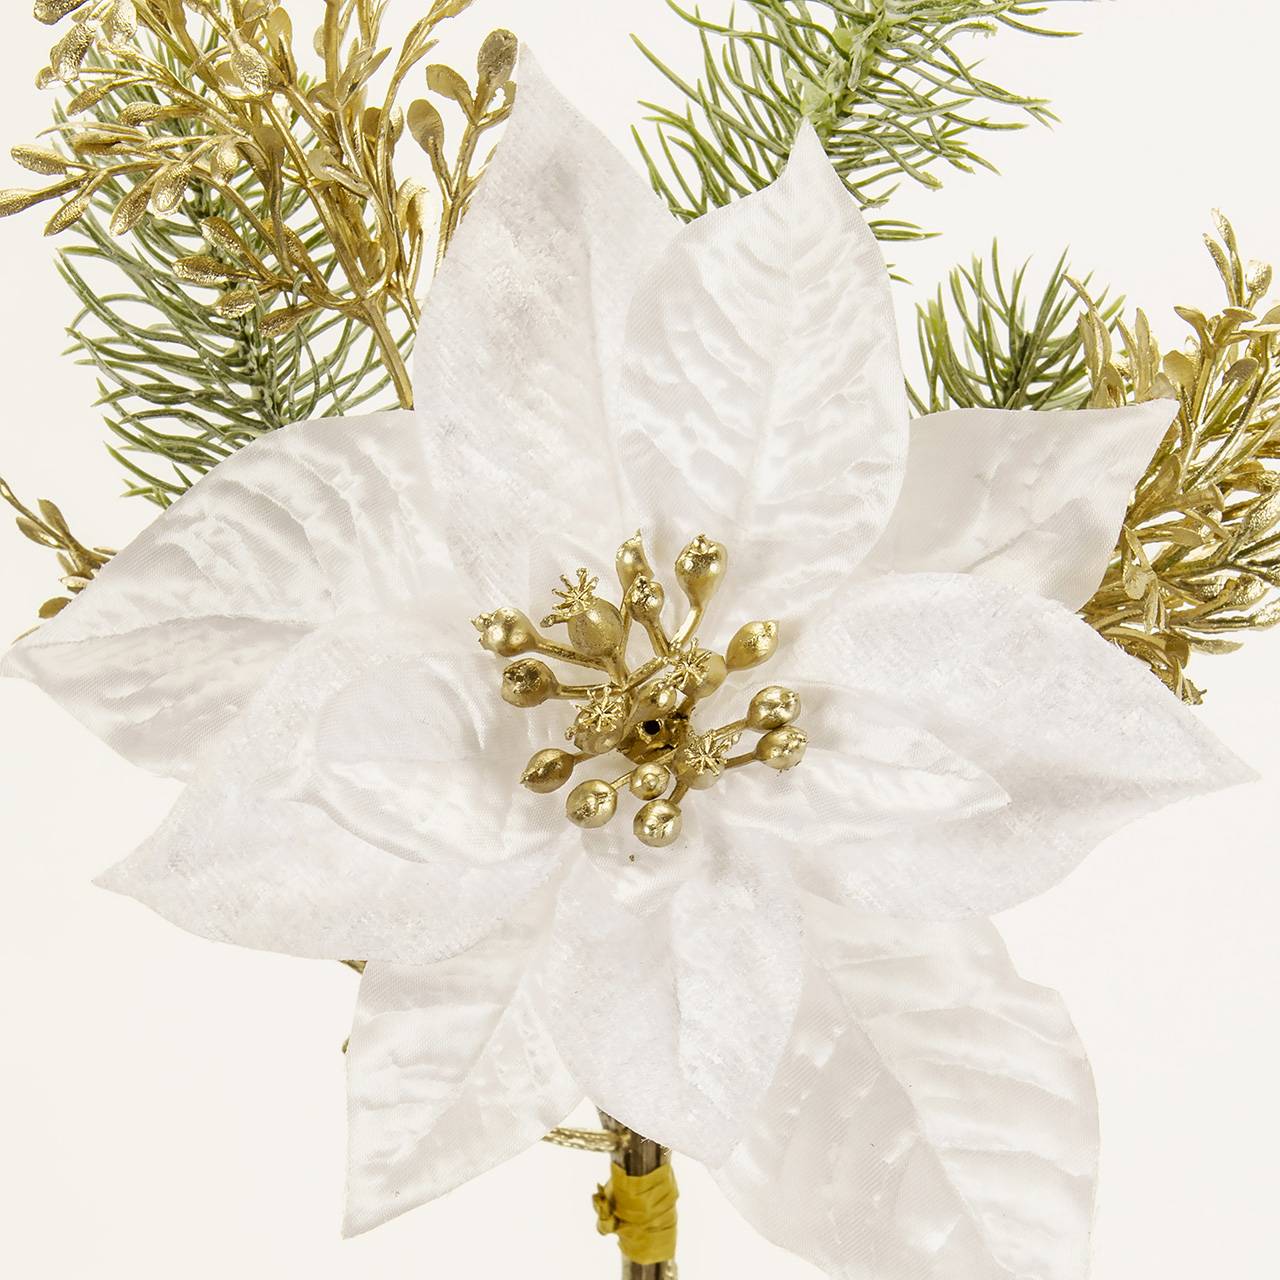 MAGIQ　キャロルポインセチアバンドル　ホワイト　アーティフィシャルフラワー　造花　クリスマス　FX001504-001